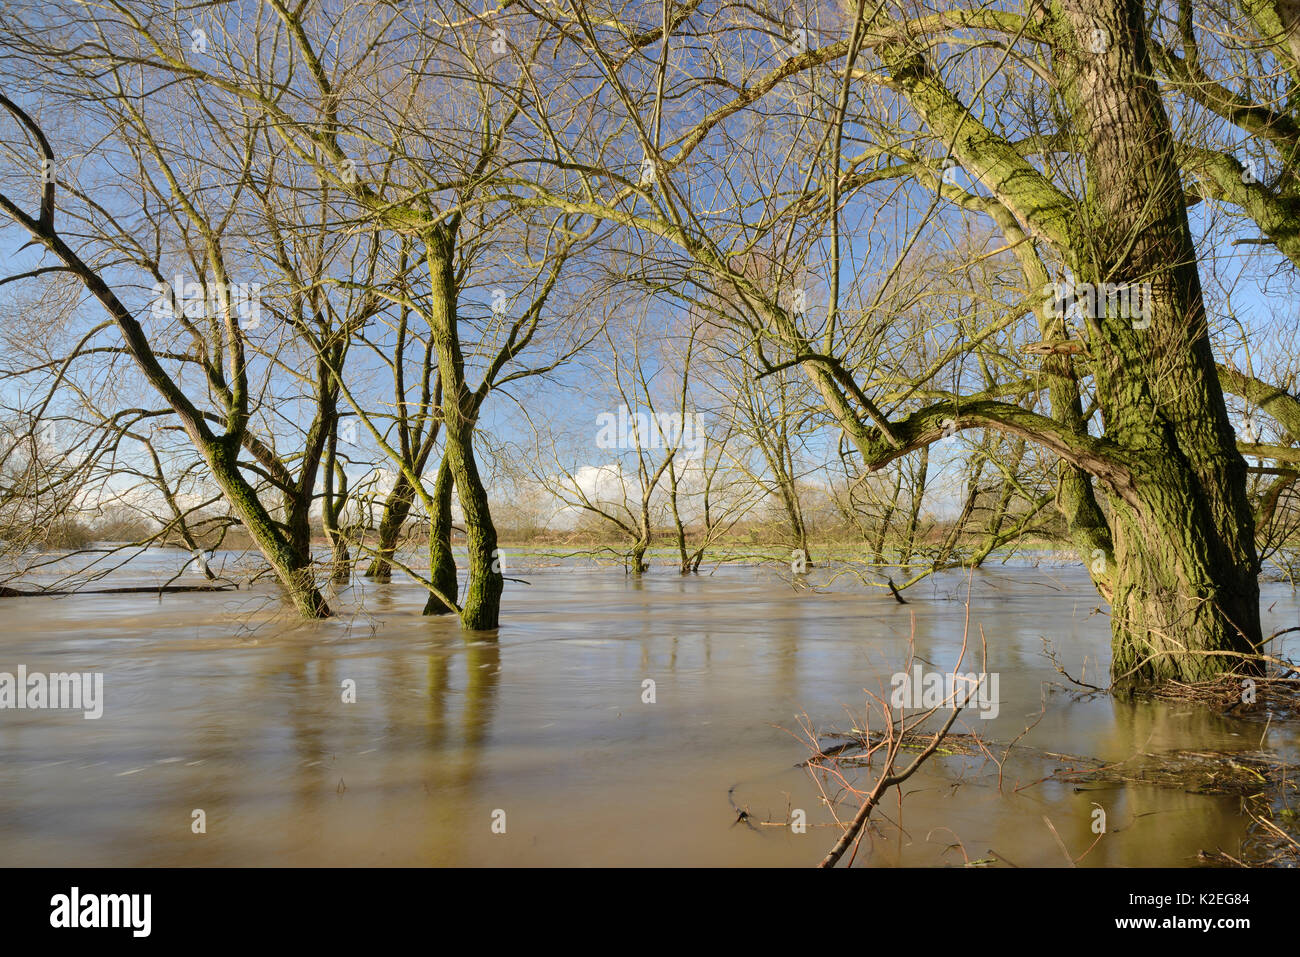 Saule (Salix sp.) frangeant la Rivière Avon en partie submergé après des semaines de forte pluie a fait éclater ses rives, Lacock, Wiltshire, Royaume-Uni, février 2014. Banque D'Images